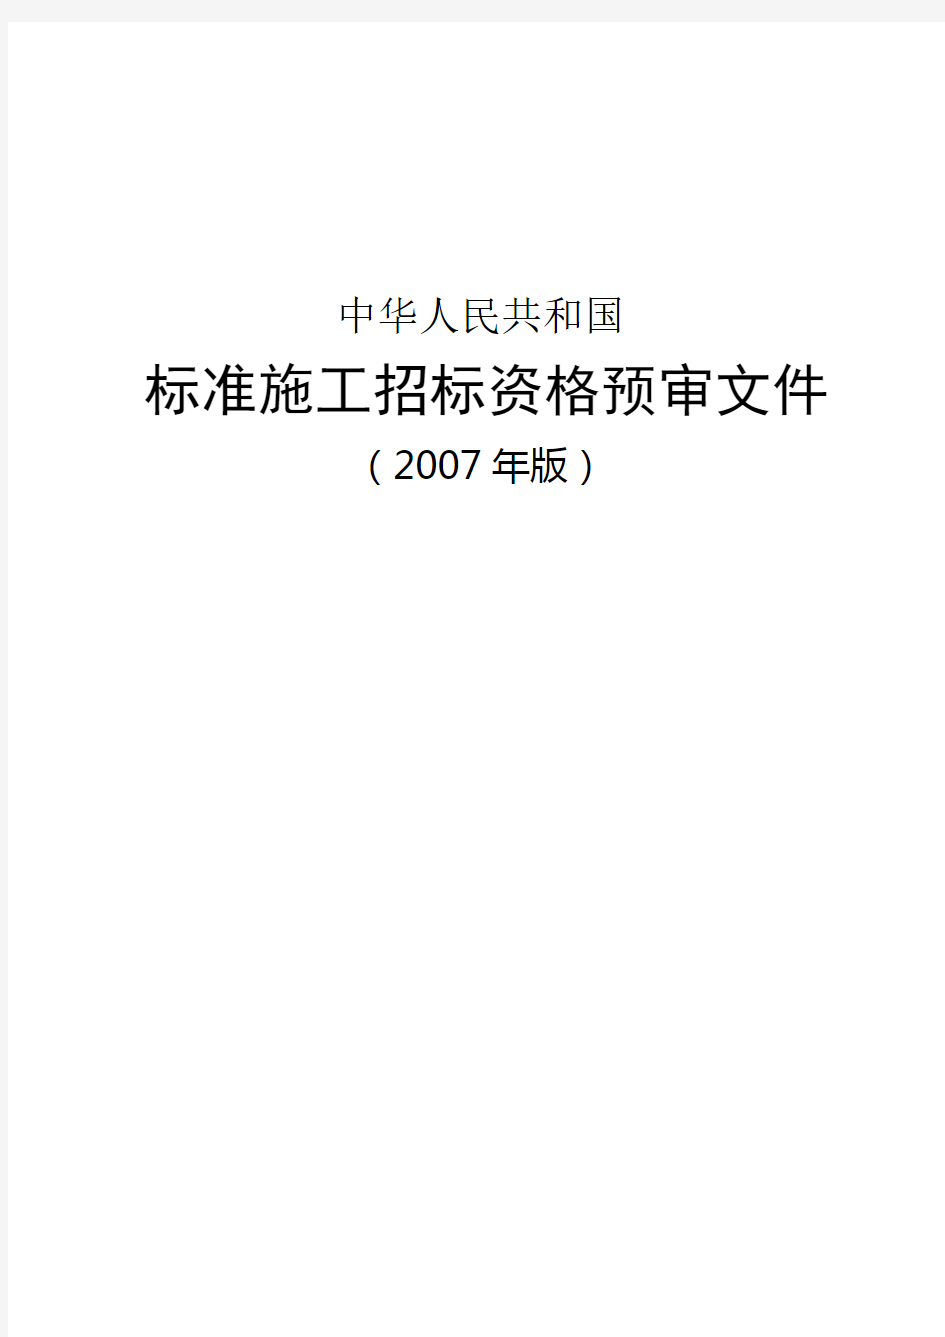 中华人民共和国标准施工招标资格预审文件版